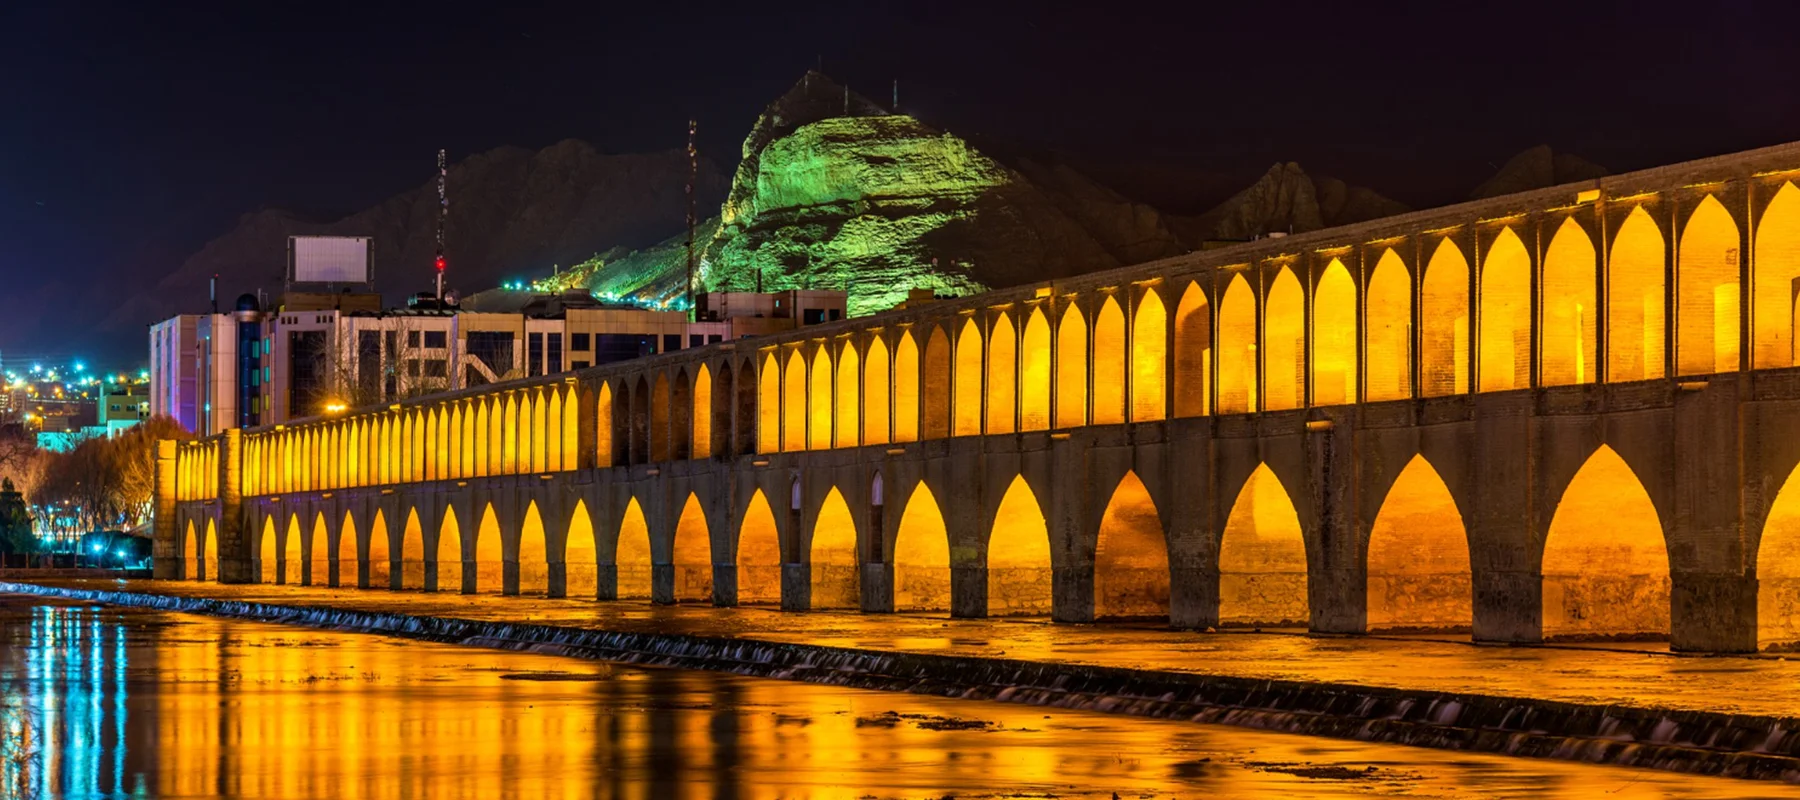 جسر خاجو: أعجوبة تاريخية مميزة